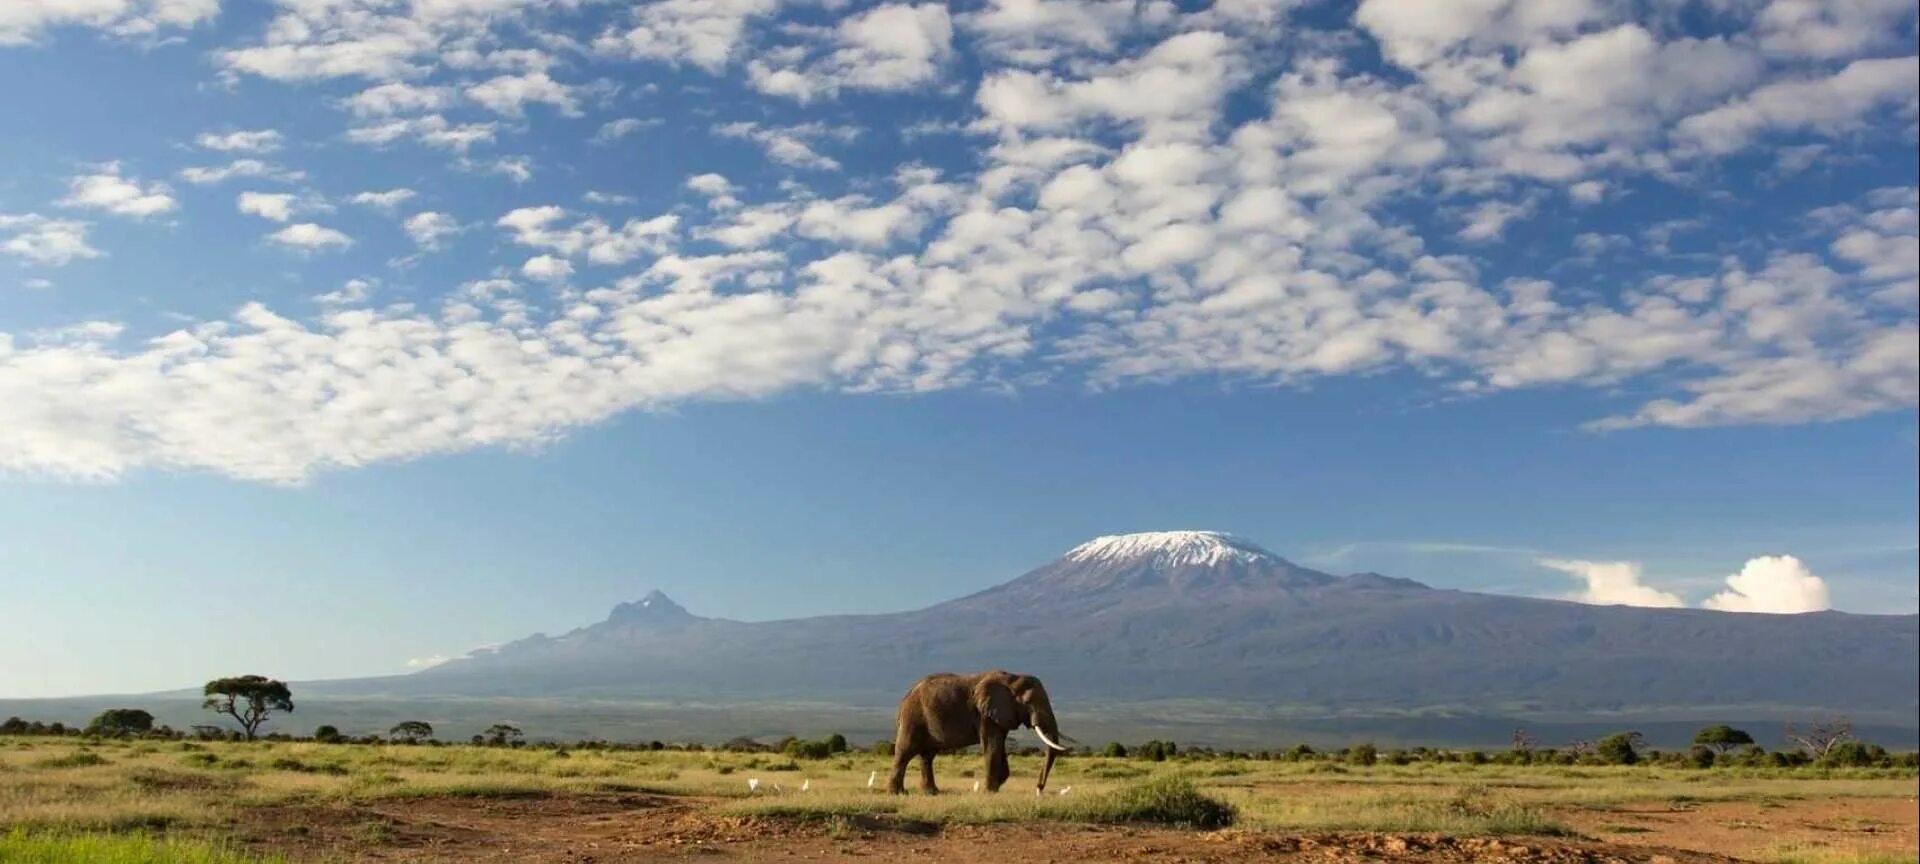 See africa. Танзания Килиманджаро. Амбосели Килиманджаро. Национальный парк Килиманджаро в Африке. Саванна гора Килиманджаро.